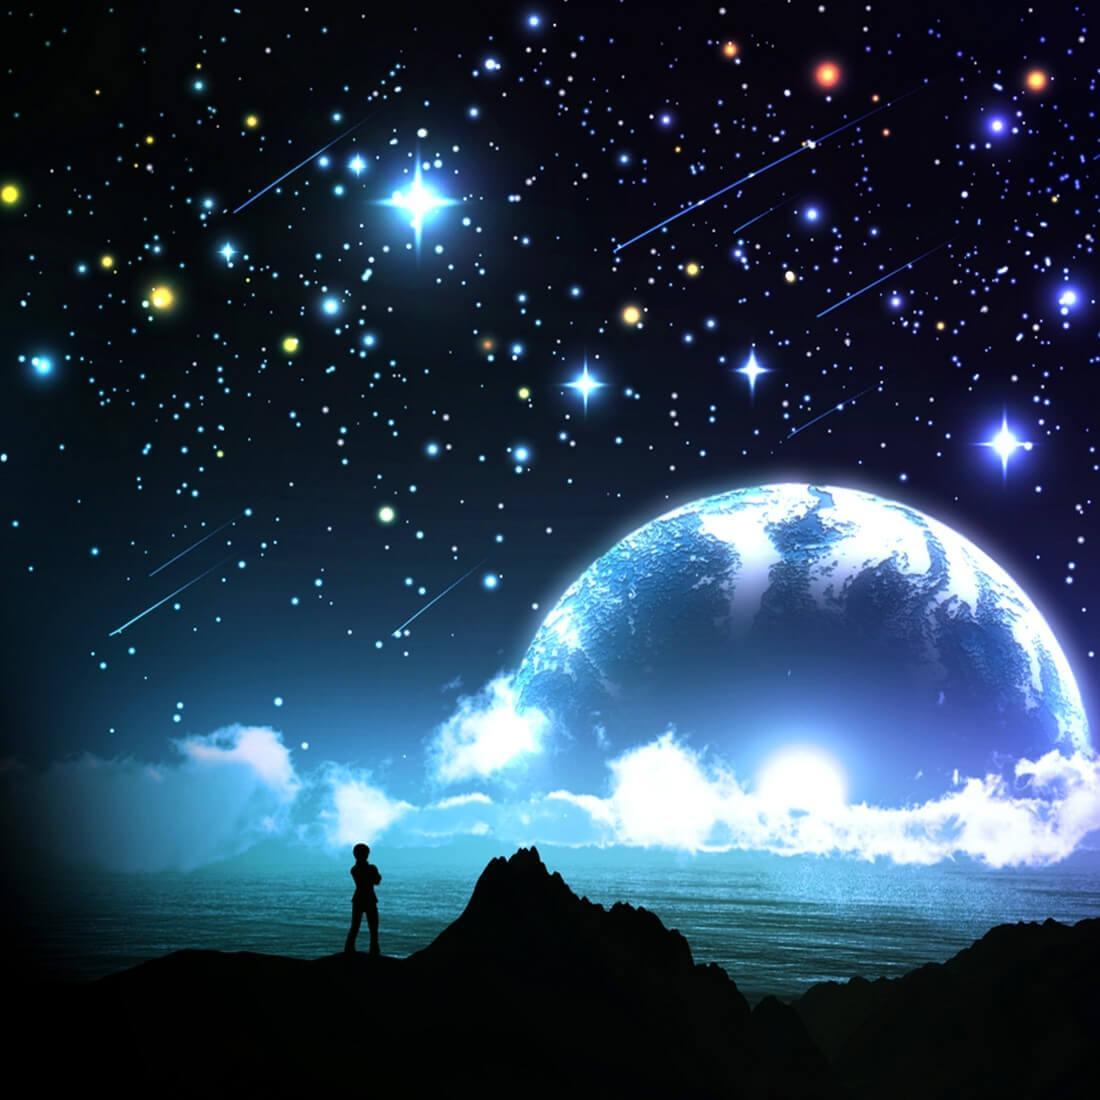 خلفيات سماء ونجوم لن يتم الخلط بينك وبين اختيار الخلفية ومشاعر الشوق